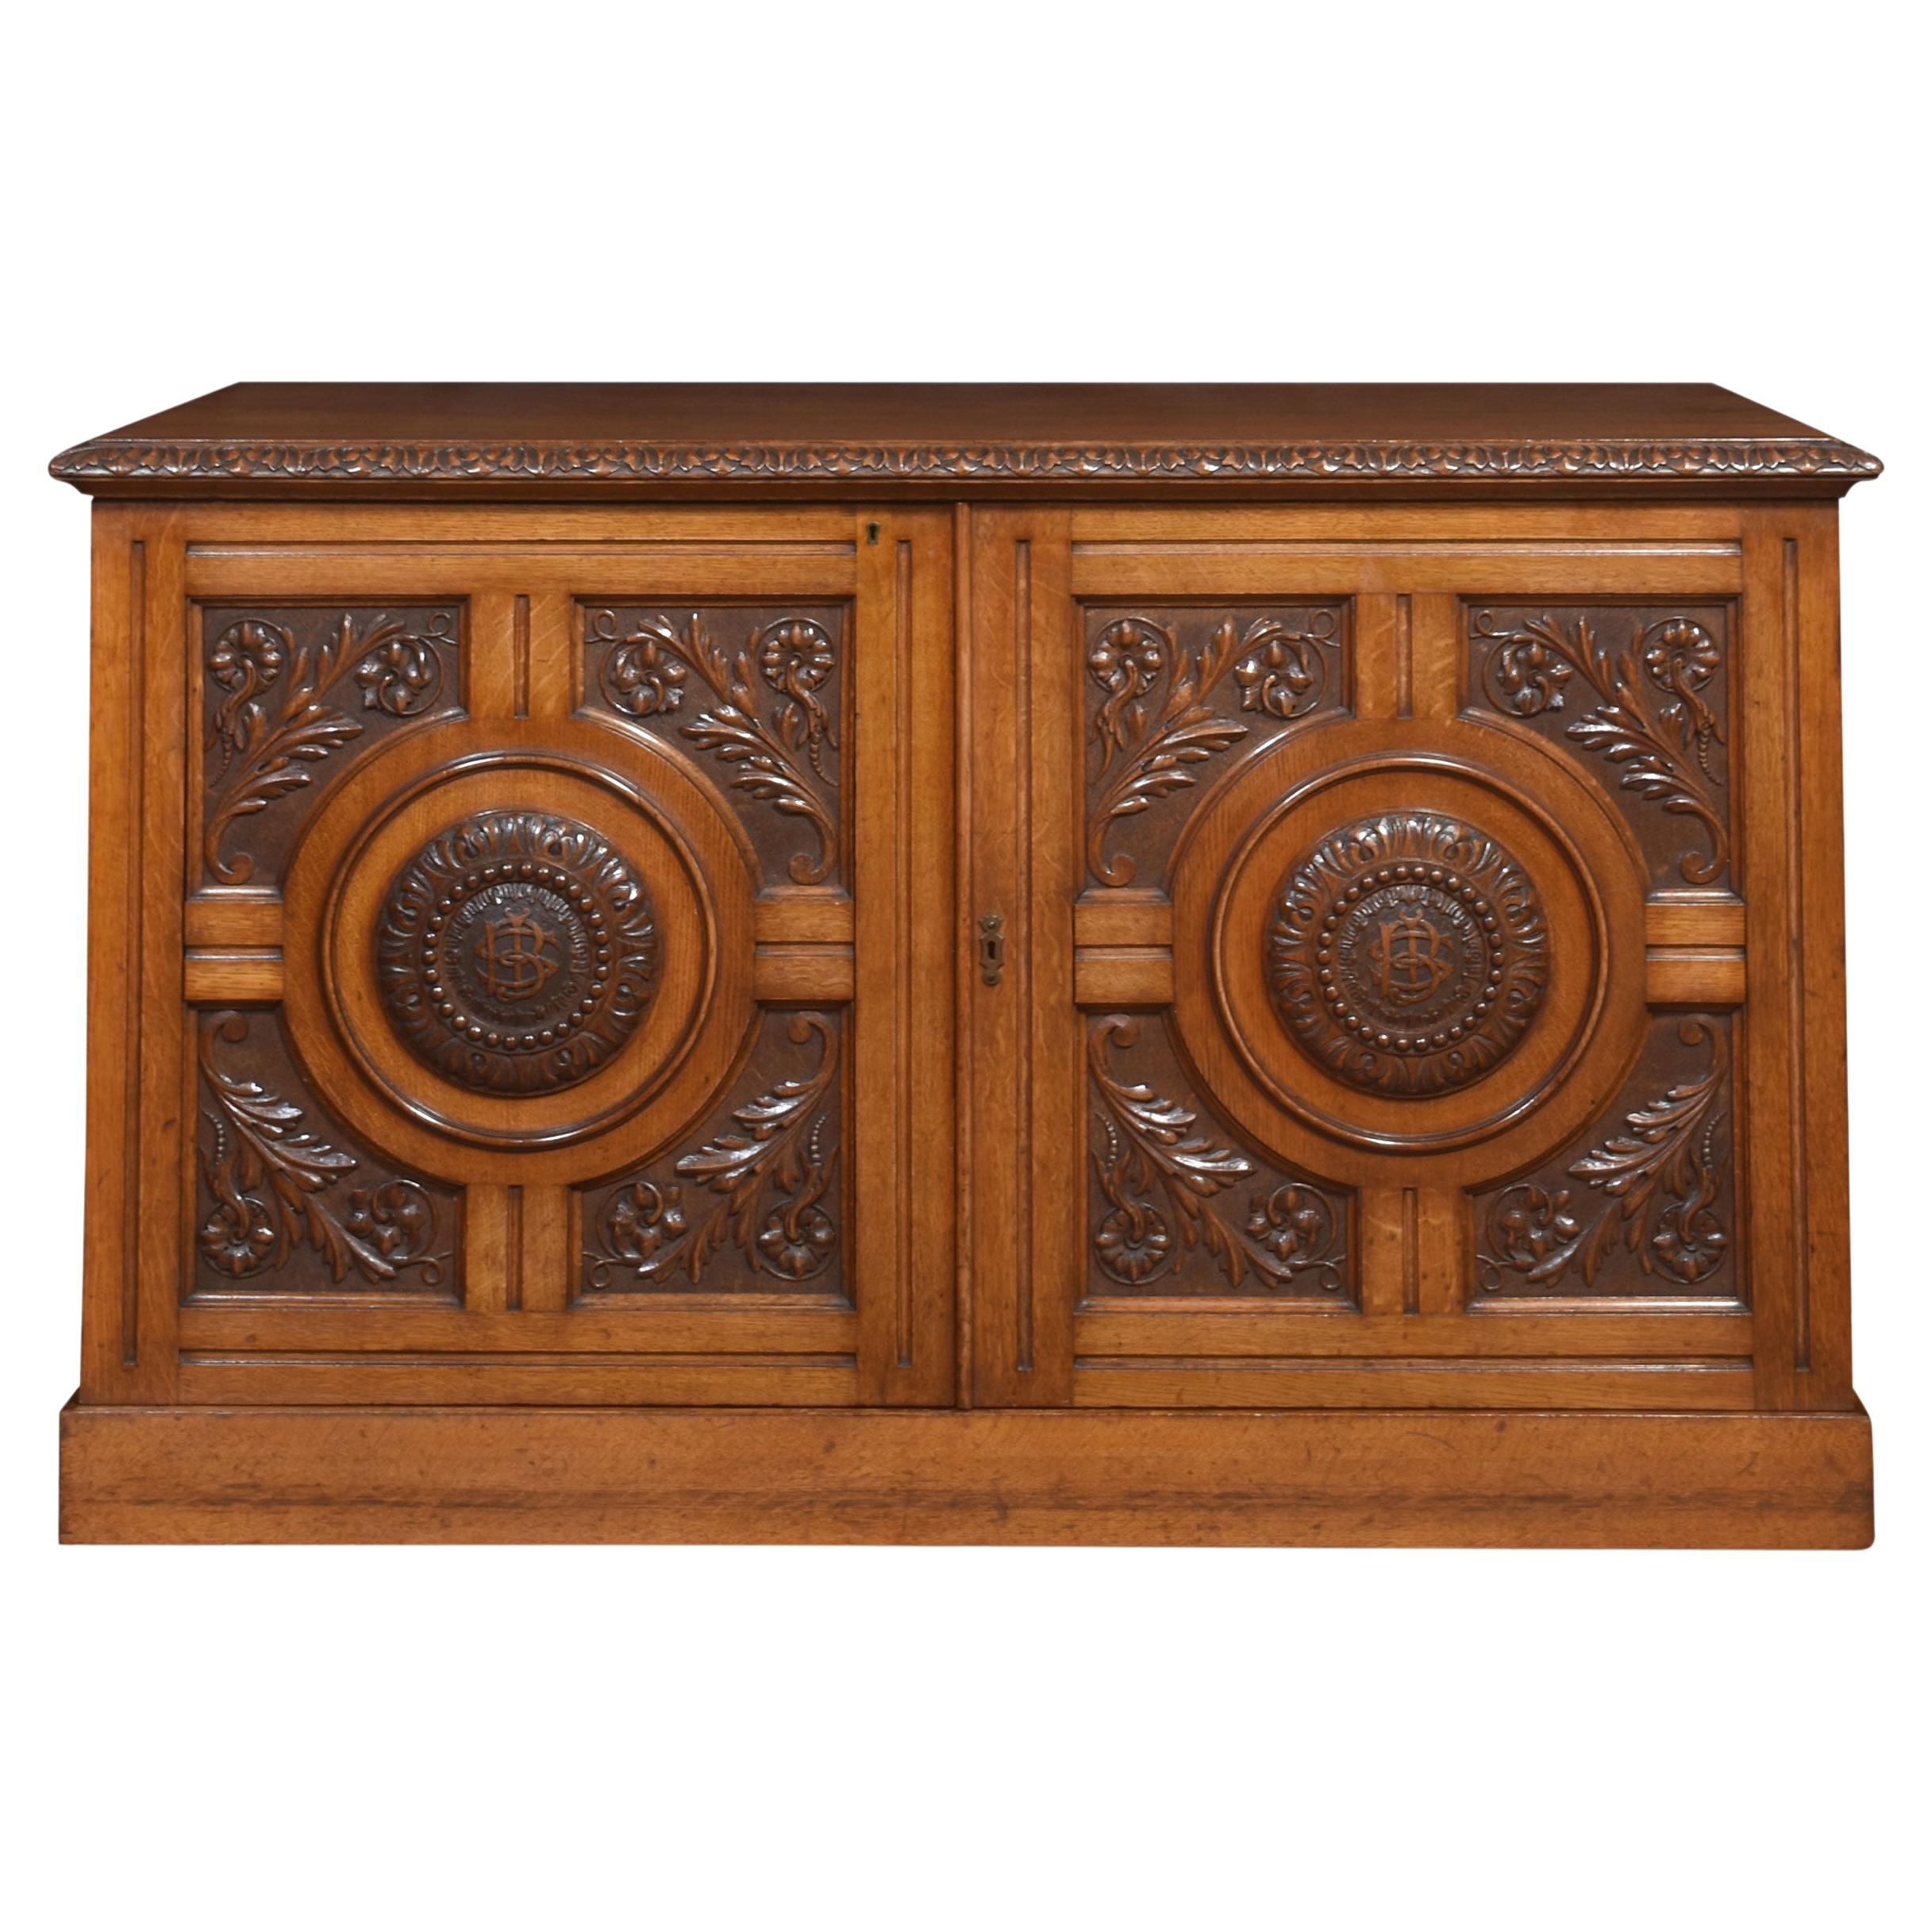 Carved oak Cabinet For Sale